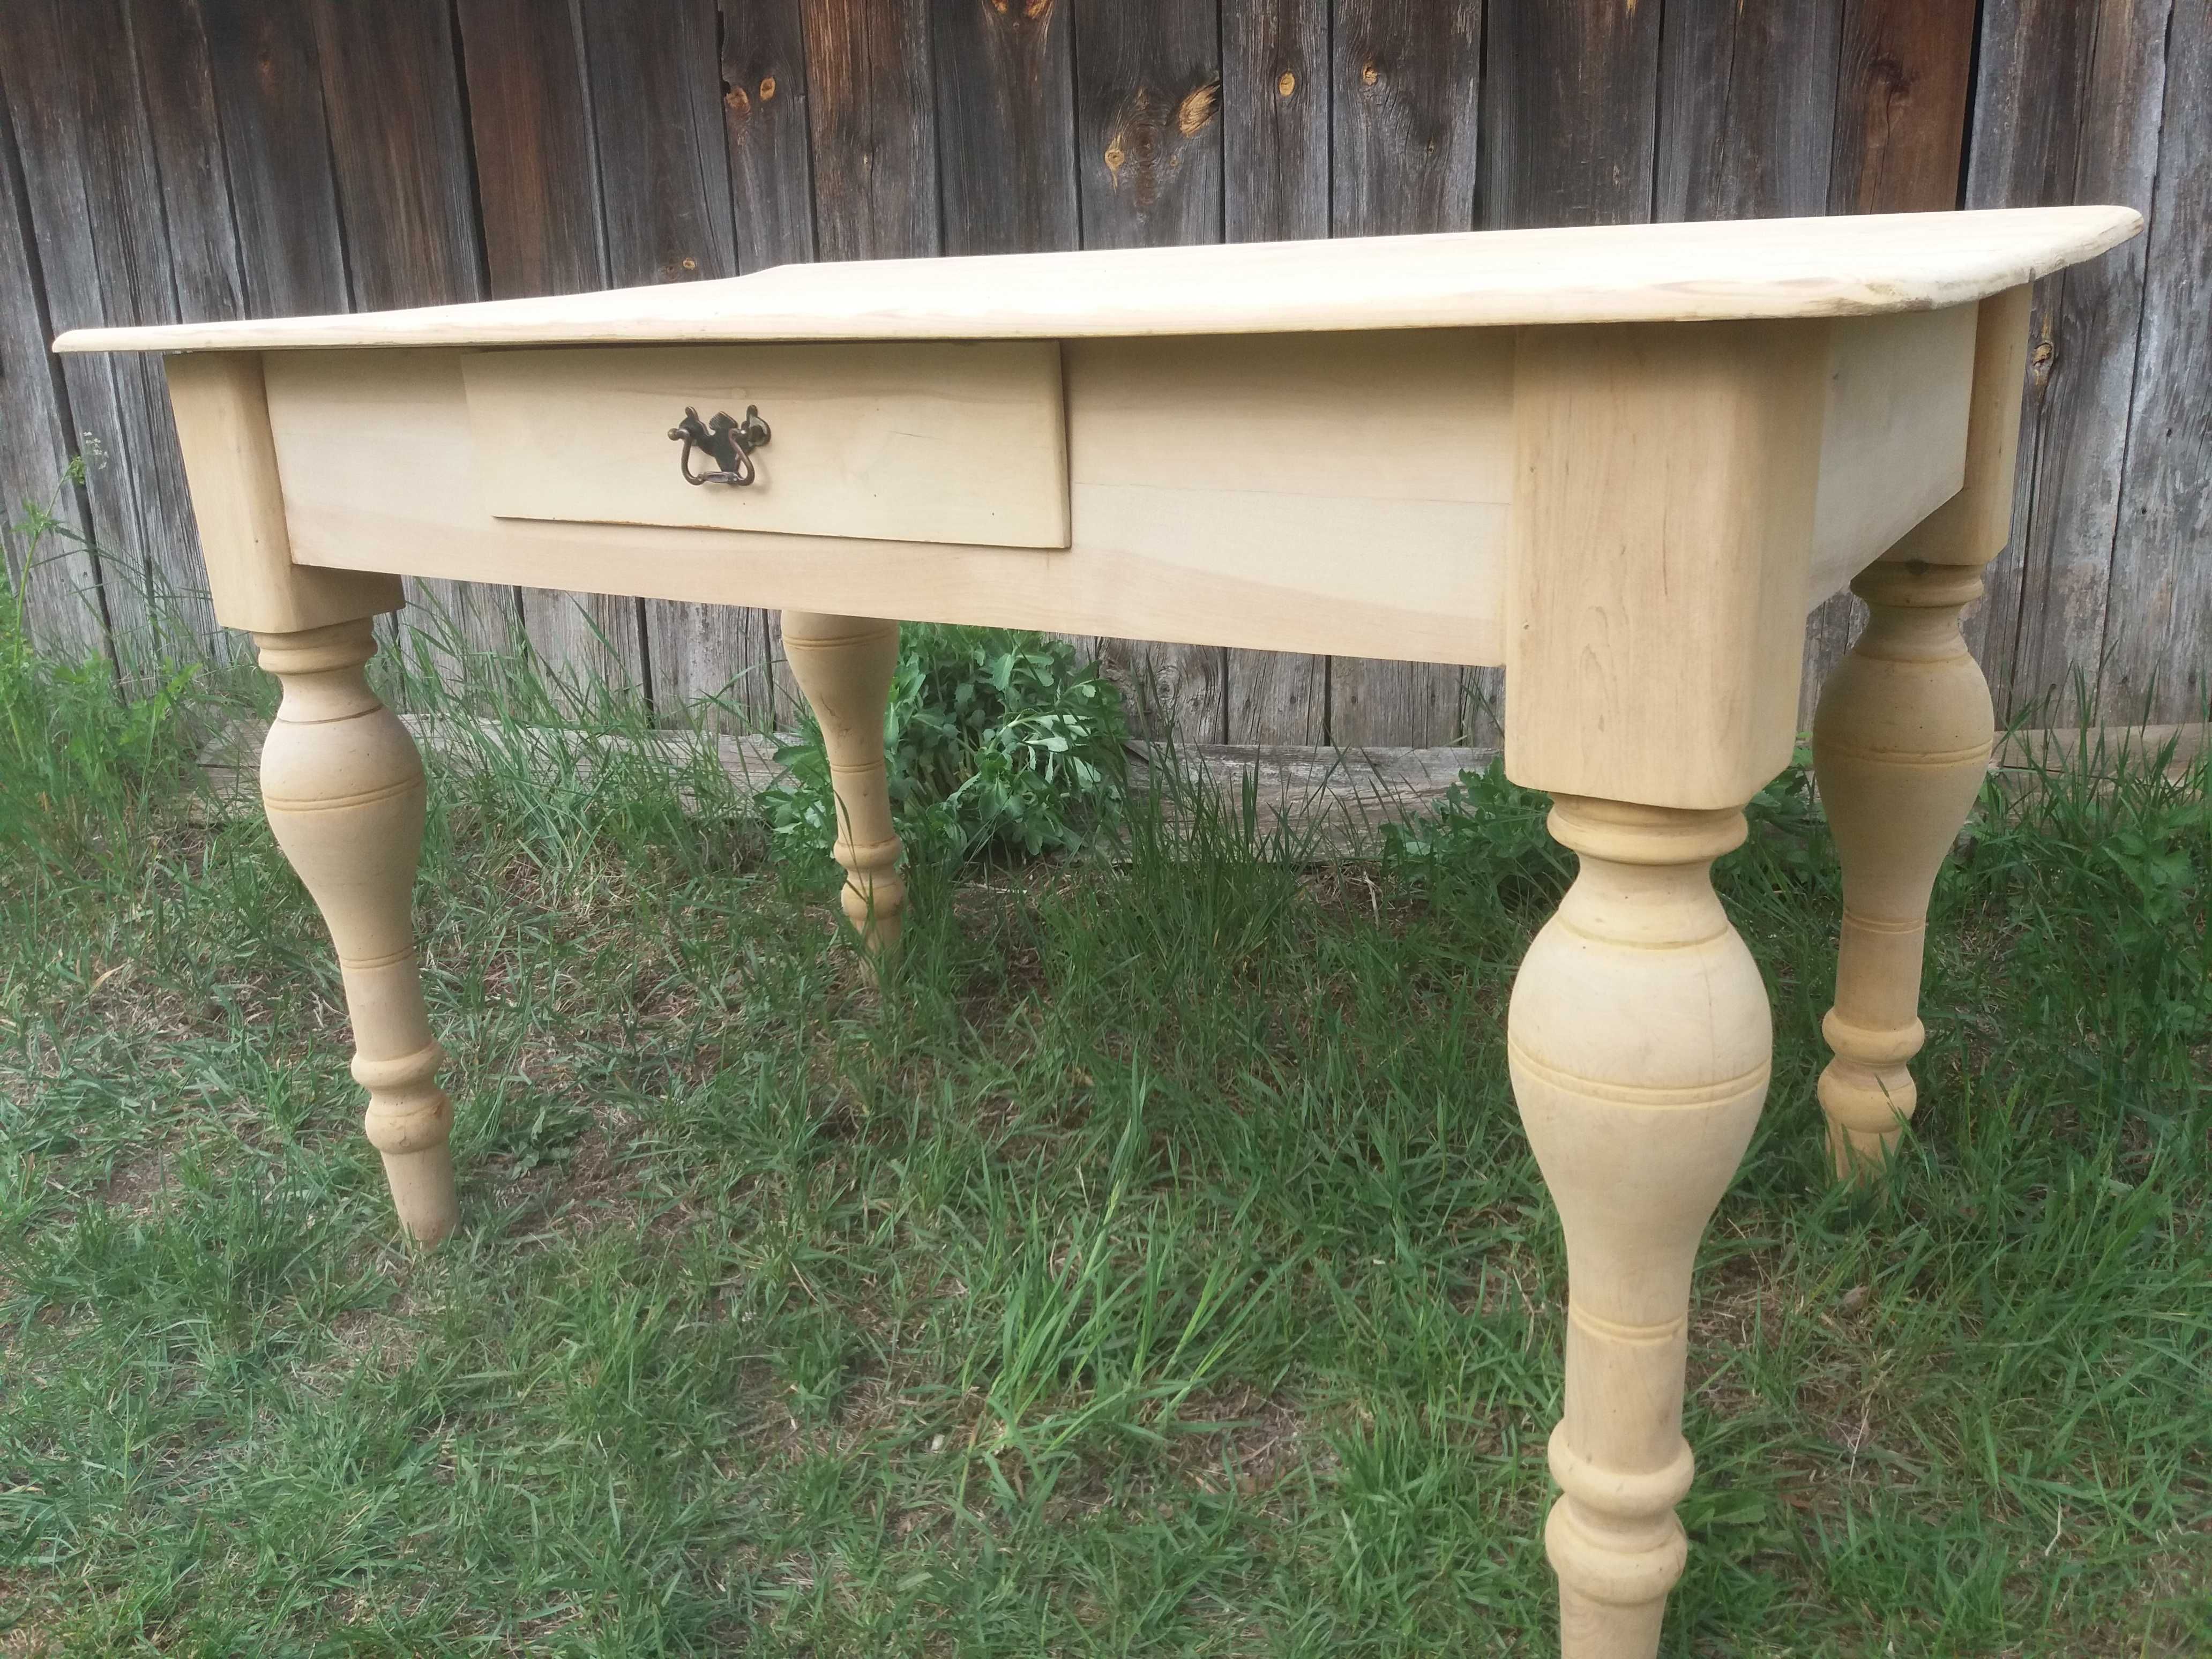 Stół stary drewniany rustykalny wiejski toczone nogi